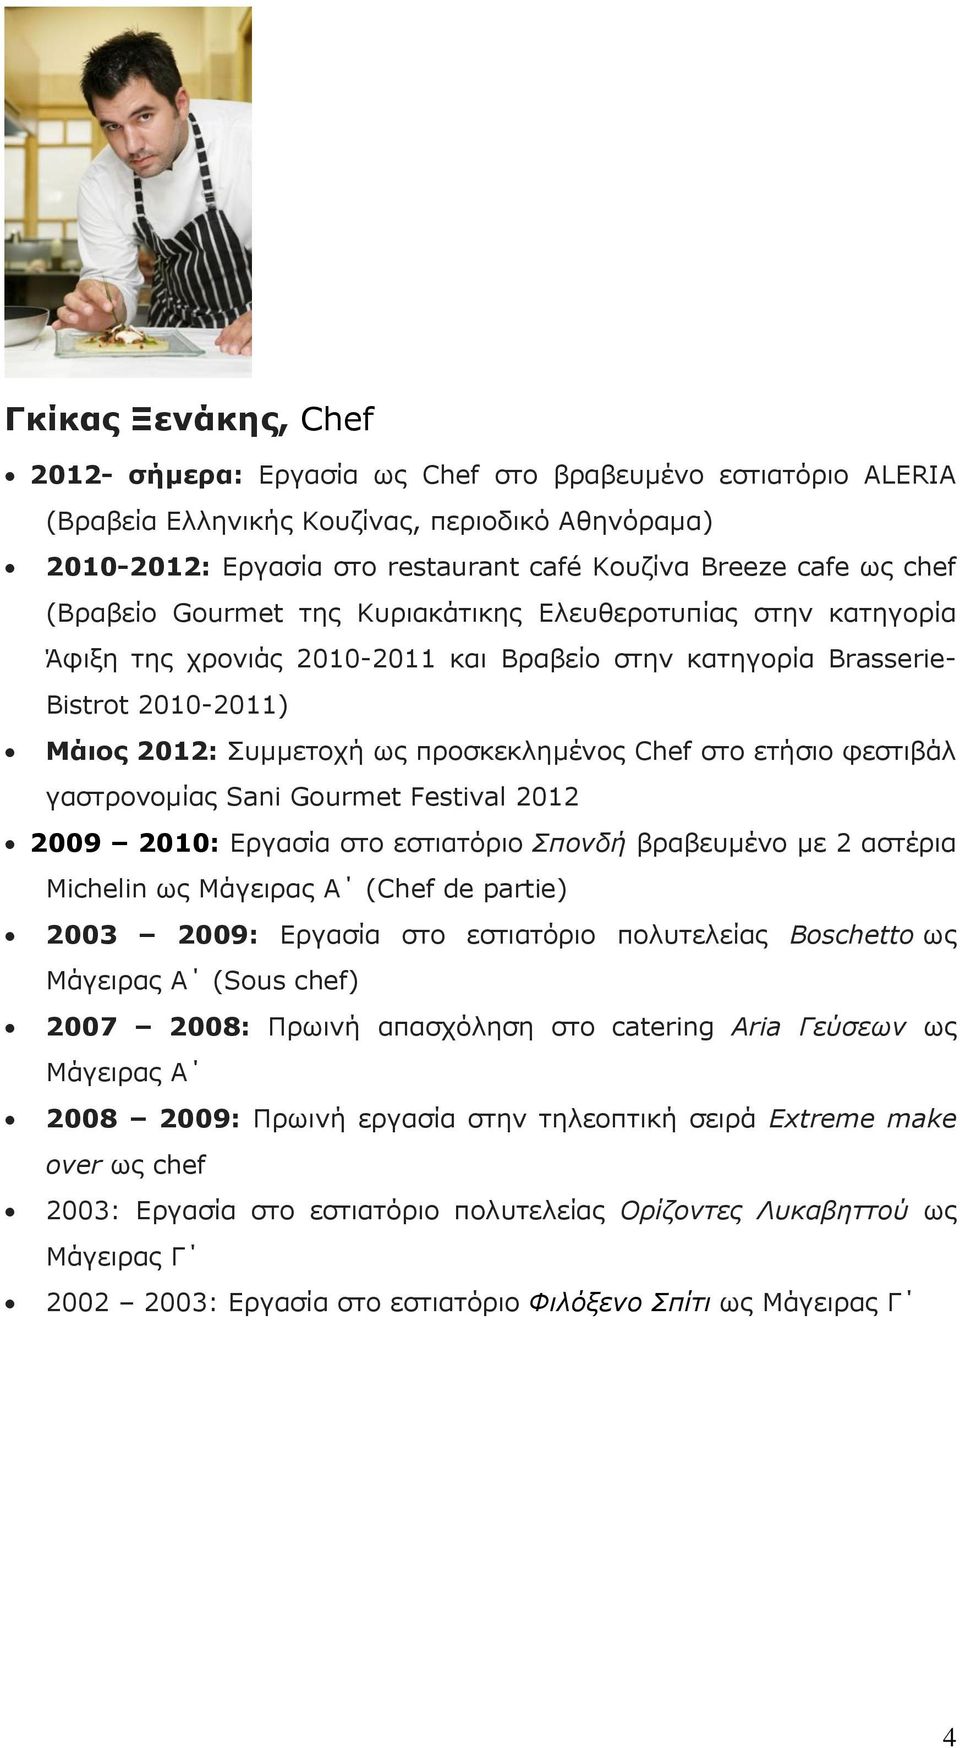 στο ετήσιο φεστιβάλ γαστρονομίας Sani Gourmet Festival 2012 2009 2010: Εργασία στο εστιατόριο Σπονδή βραβευμένο με 2 αστέρια Michelin ως Μάγειρας Α (Chef de partie) 2003 2009: Εργασία στο εστιατόριο